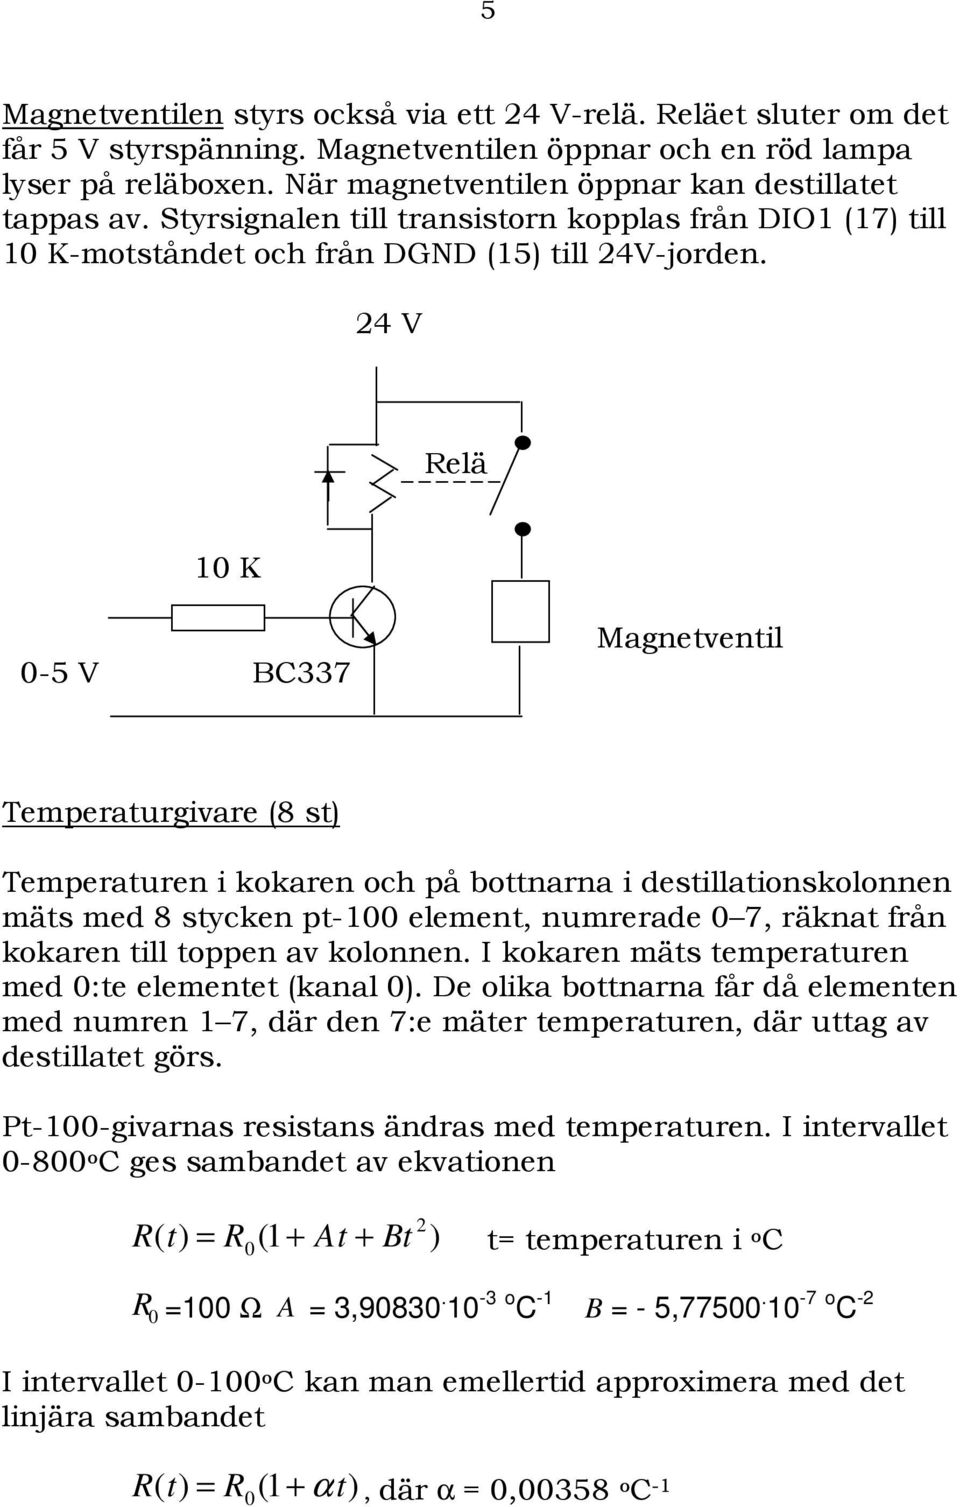 24 V Relä 10 K 0-5 V BC337 Magnetventil Temperaturgivare (8 st) Temperaturen i kokaren och på bottnarna i destillationskolonnen mäts med 8 stycken pt-100 element, numrerade 0 7, räknat från kokaren